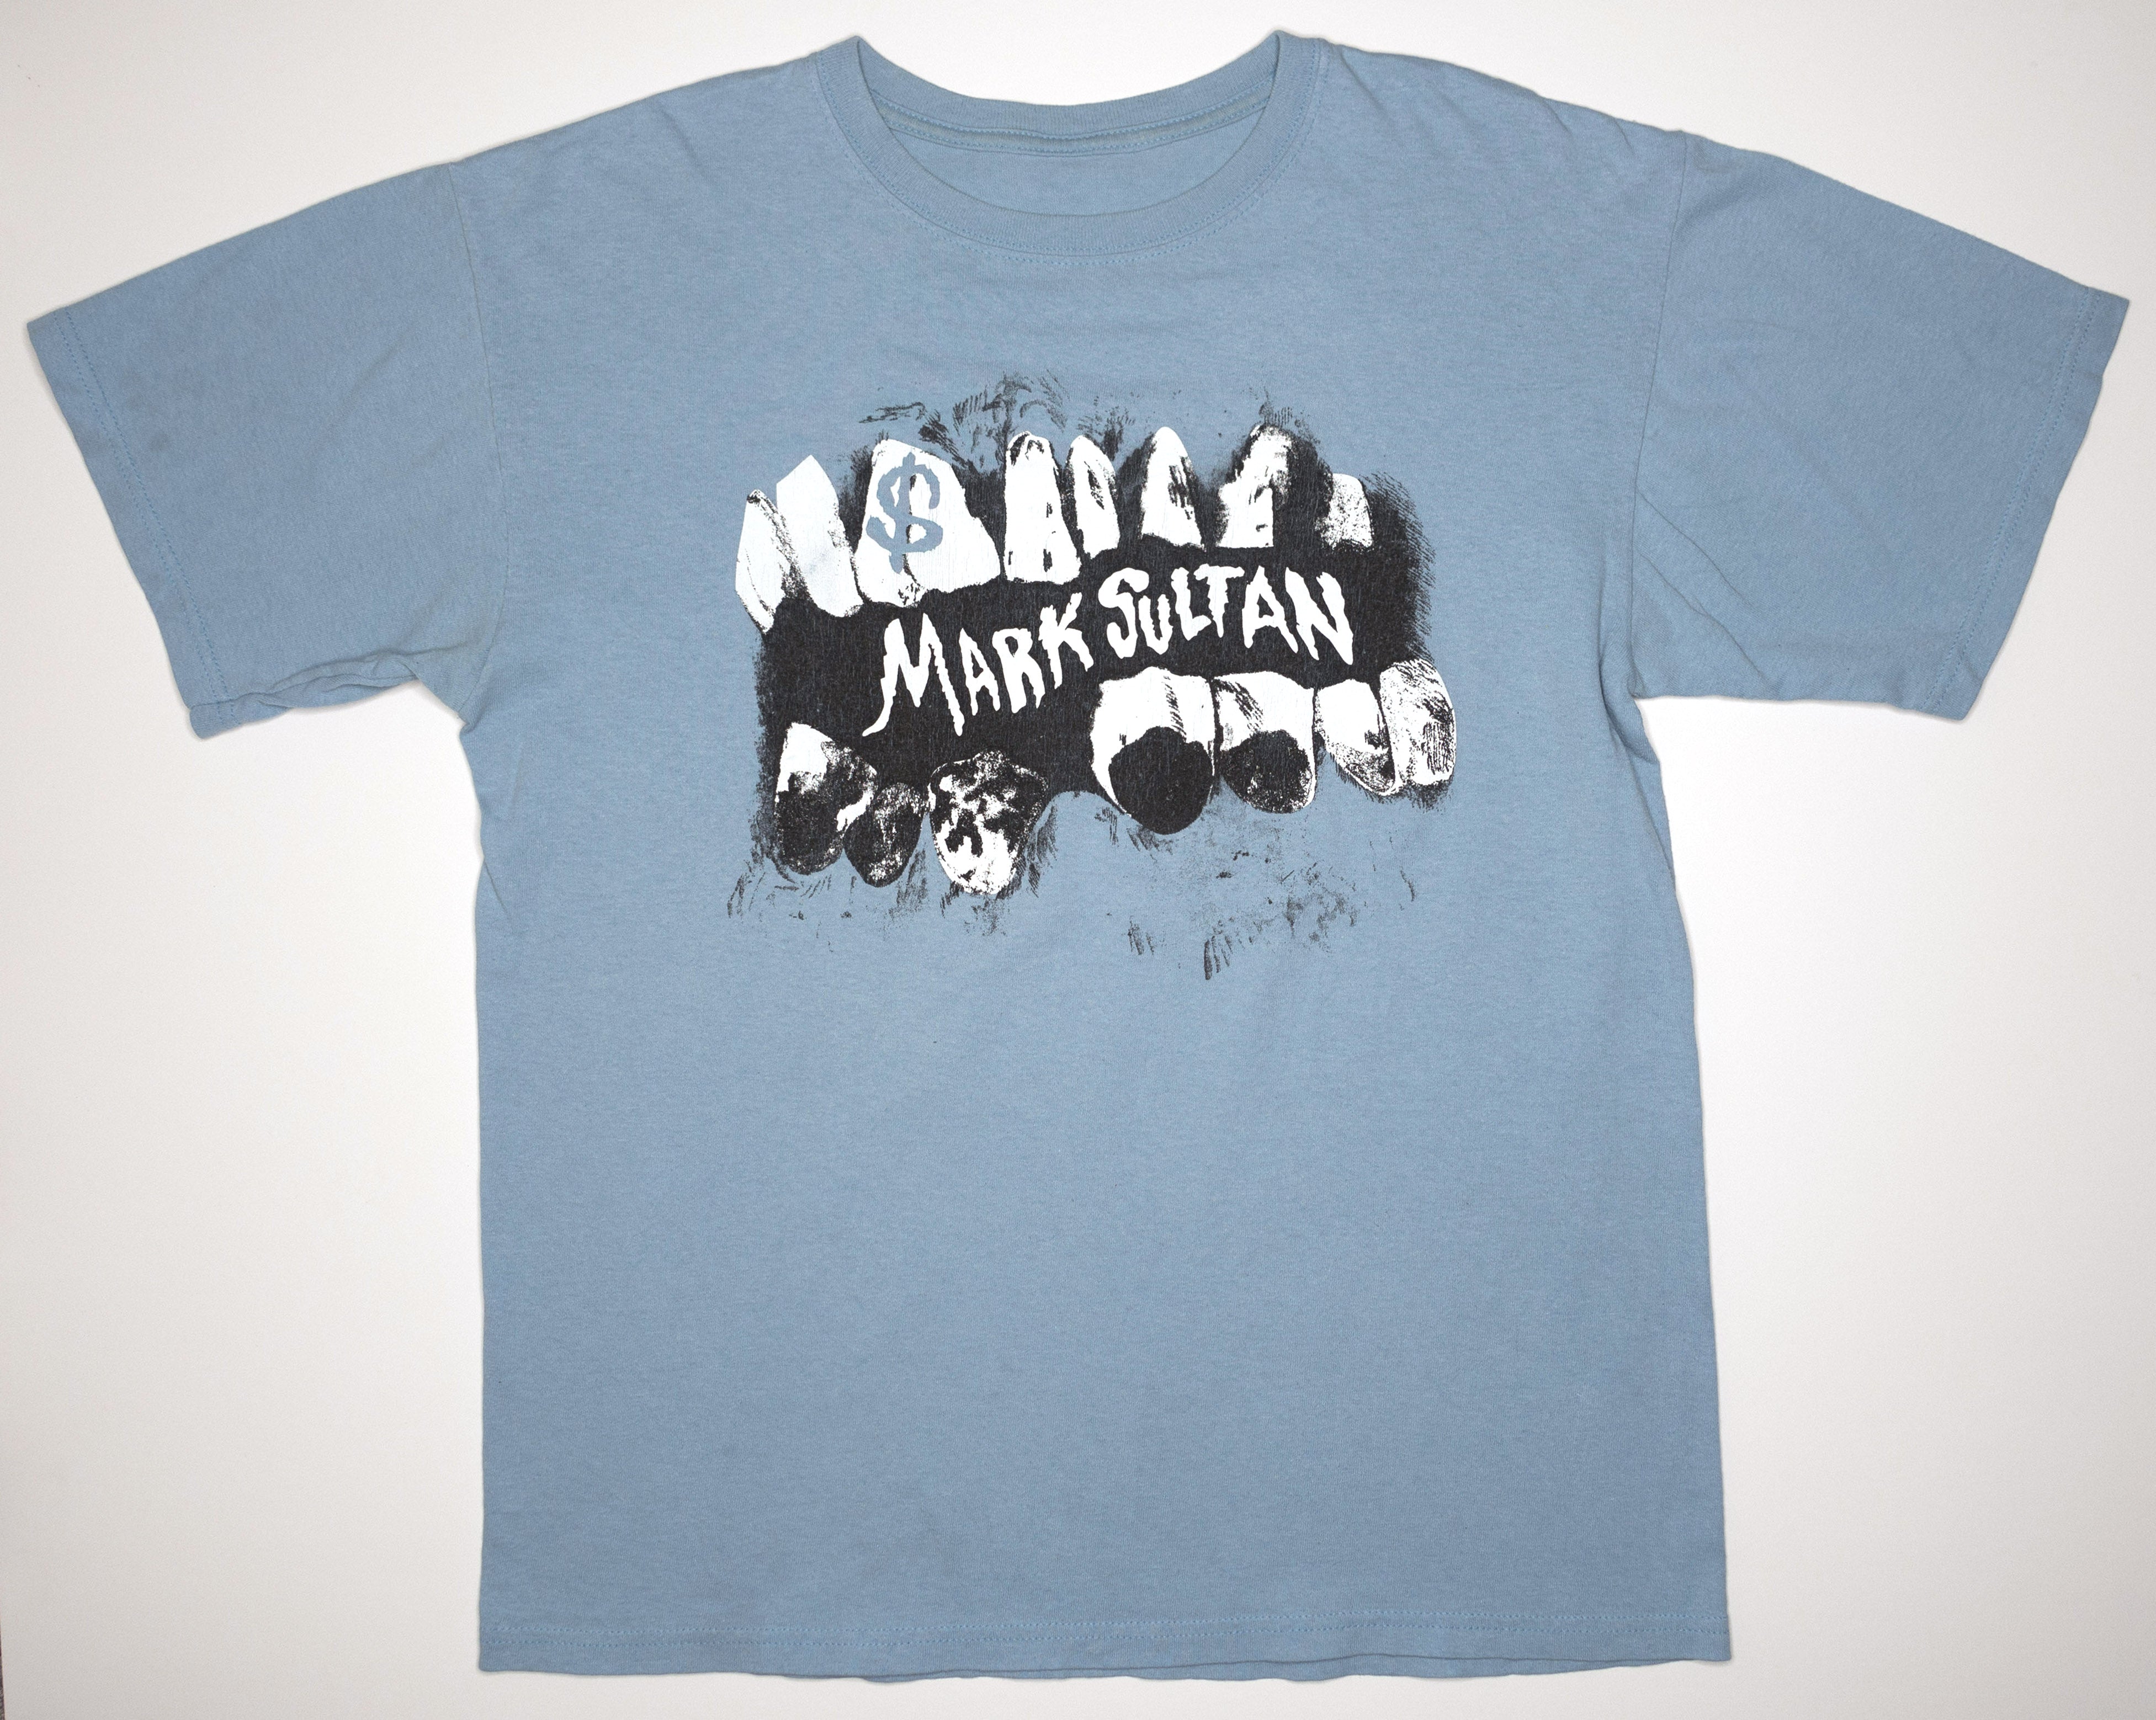 Mark Sultan - $ 2010 Tour Shirt Size Large